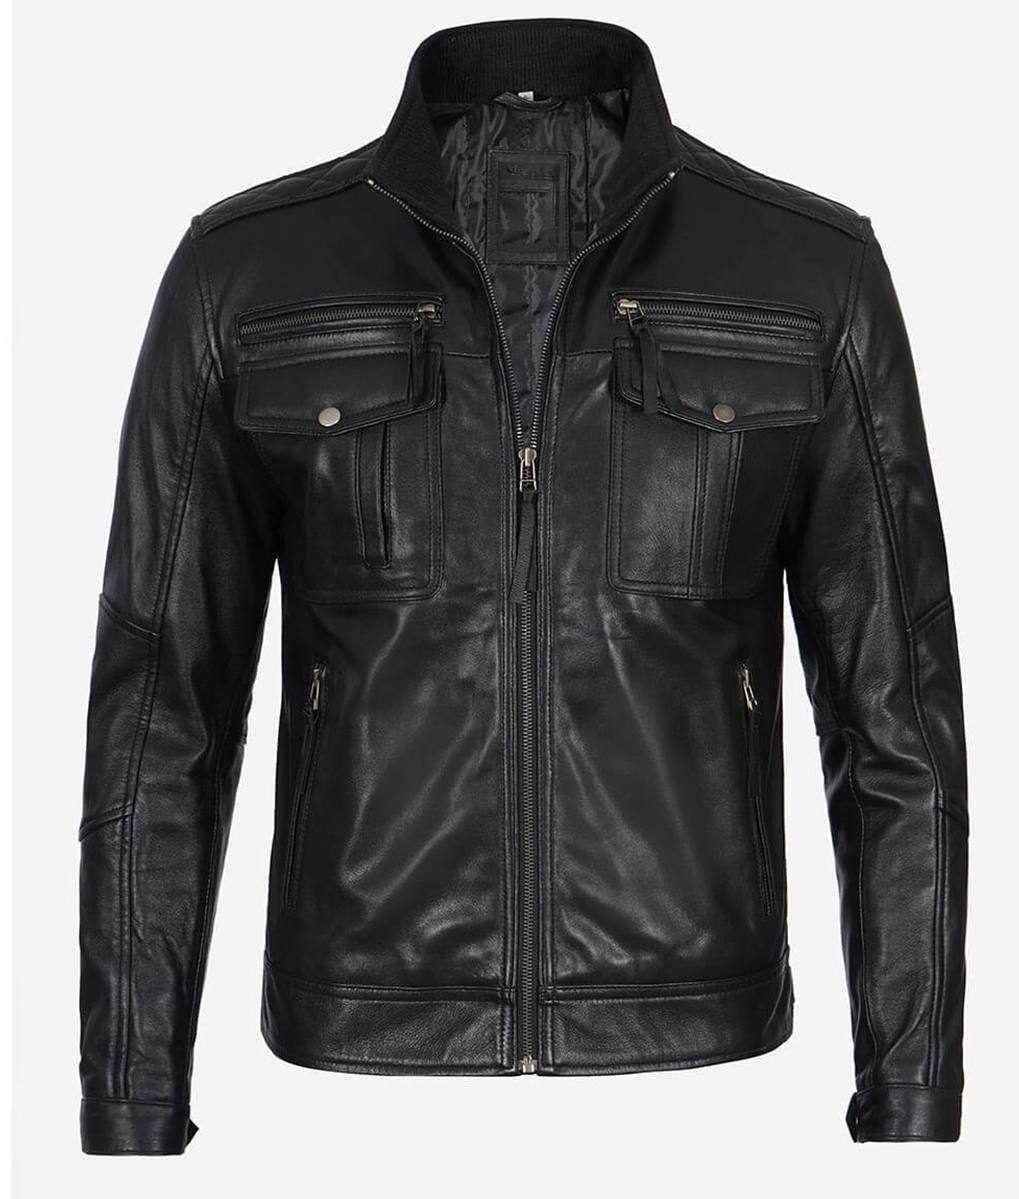 racer_leather_jacket_black